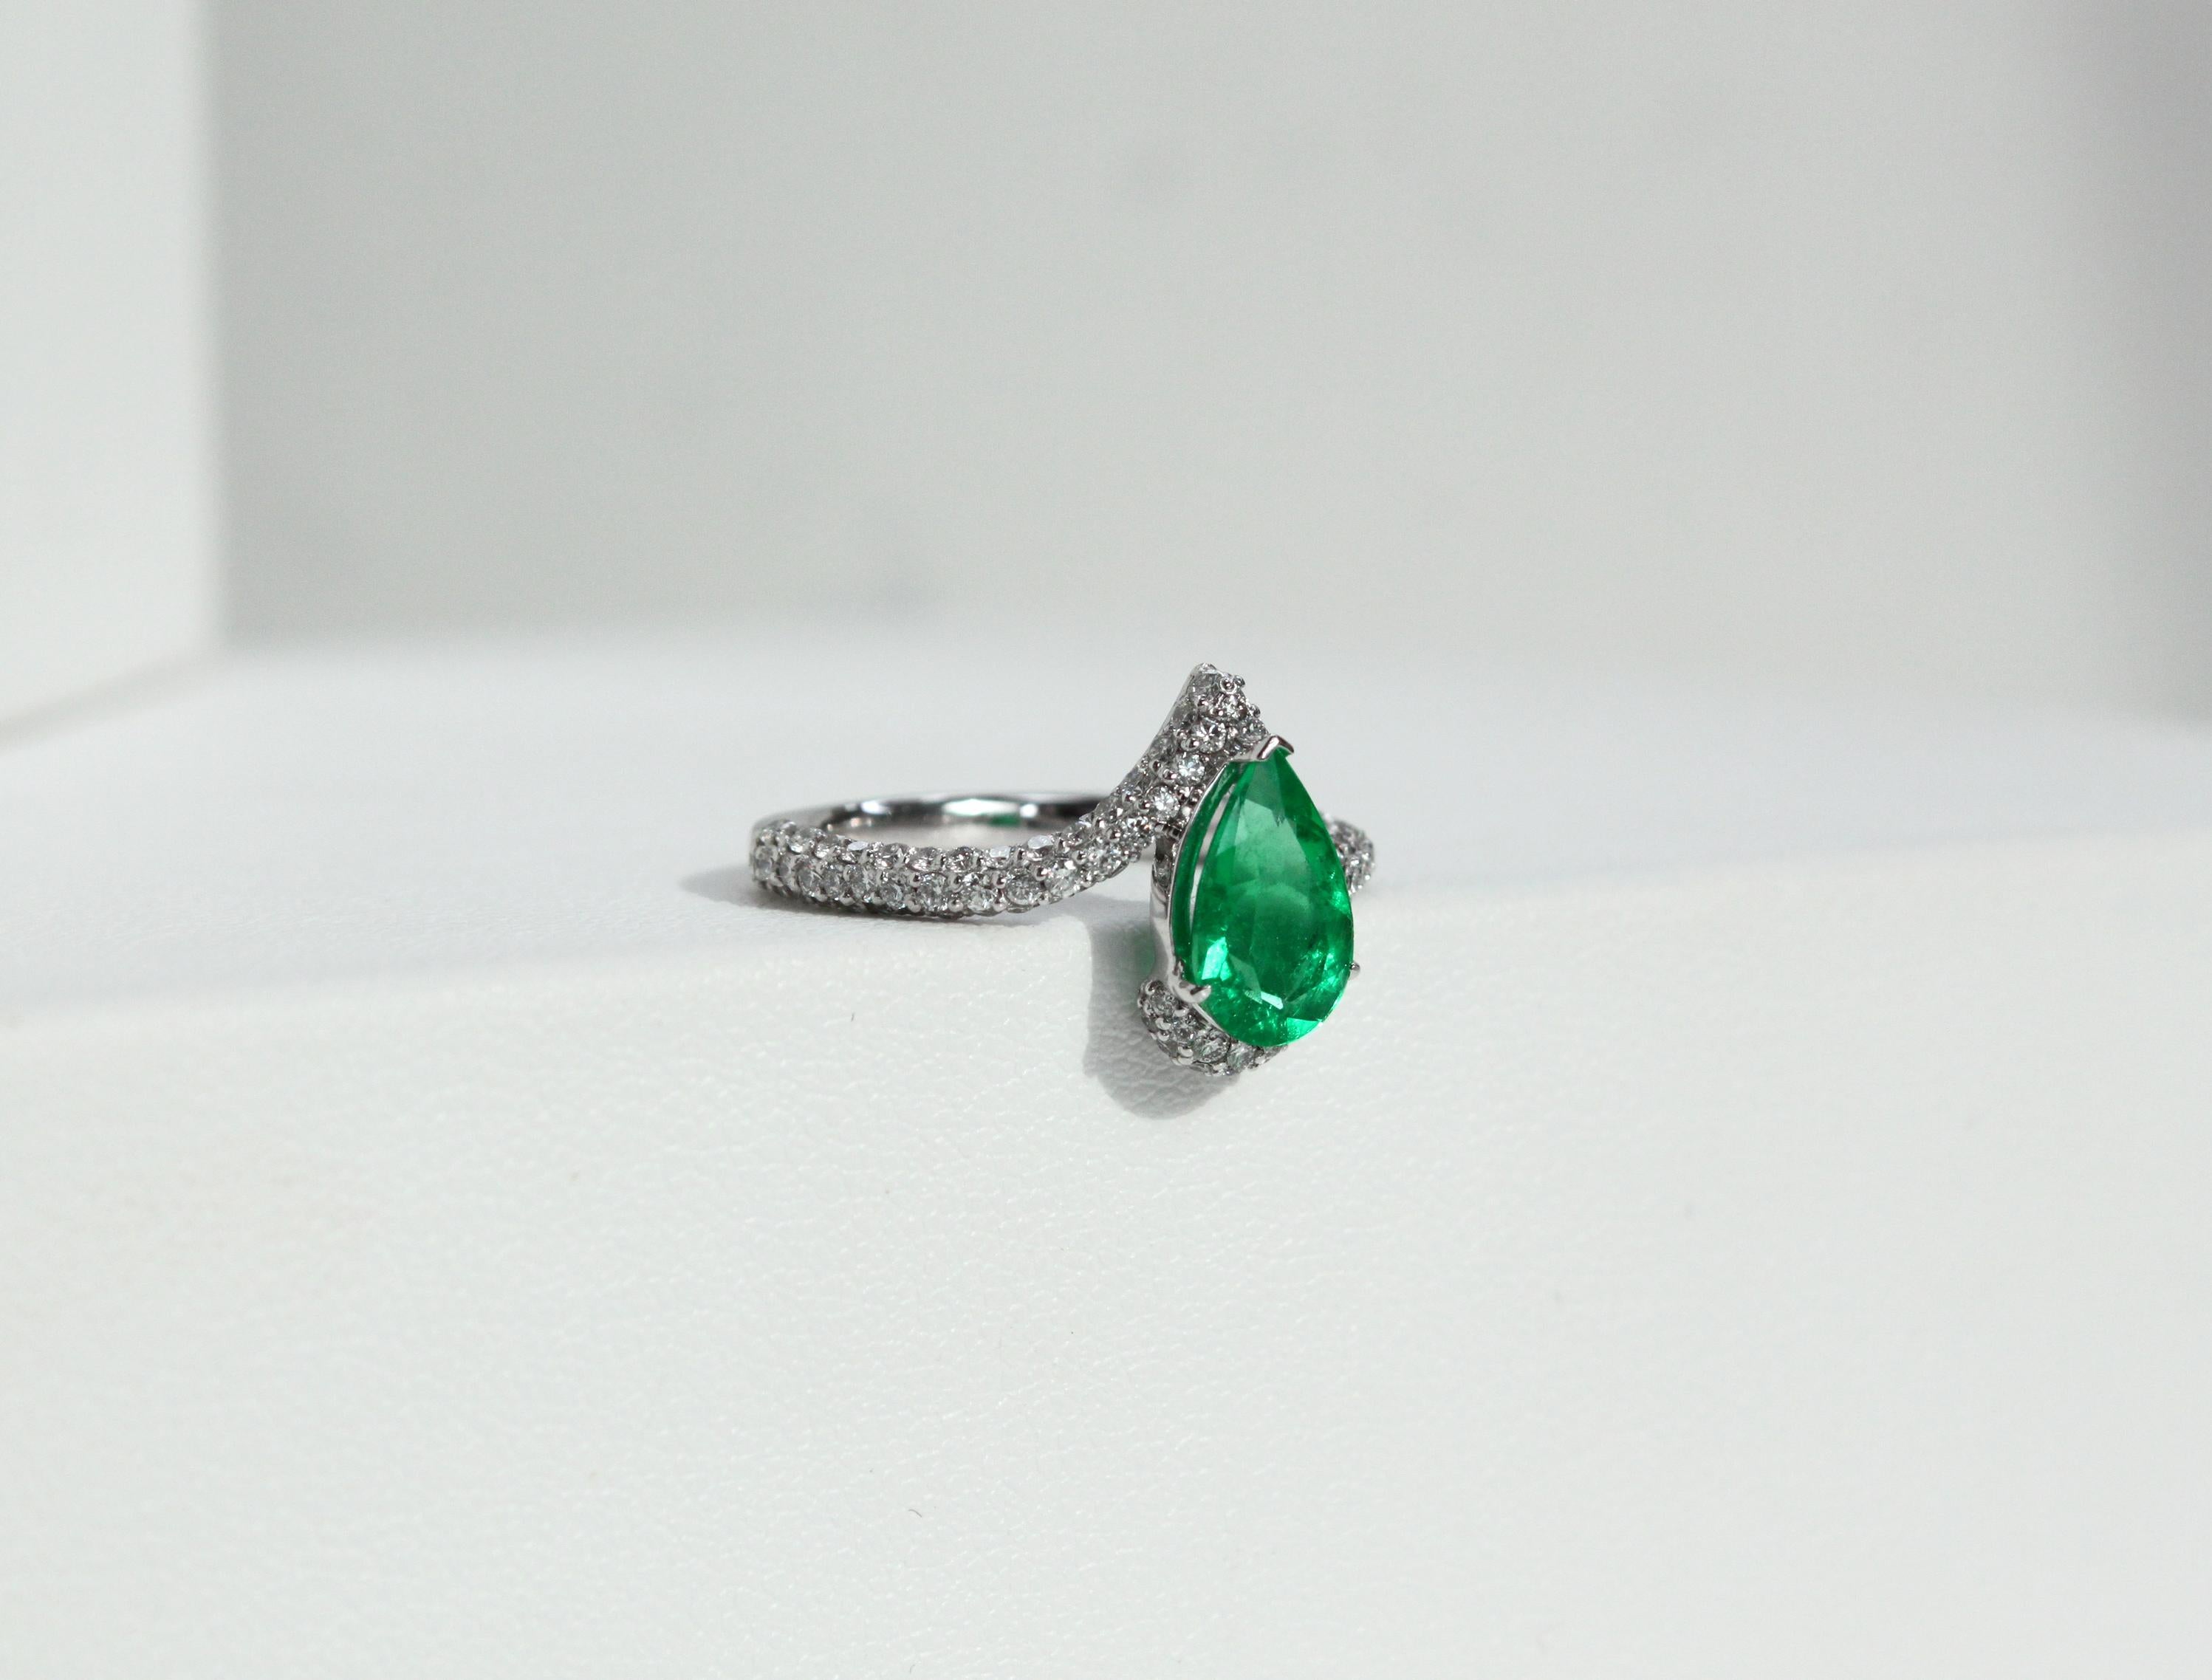 Metall - Platin
0.7ct Natürliche VVS-VS Diamanten (D-G Farbe)
Gesamtgewicht des Rings 5,19 g
Ring Größe 52 EU / 6 US / 16.5mm

Dieser exquisite Ring wurde entworfen, um die Faszination eines 1,17-karätigen grünen zertifizierten kolumbianischen